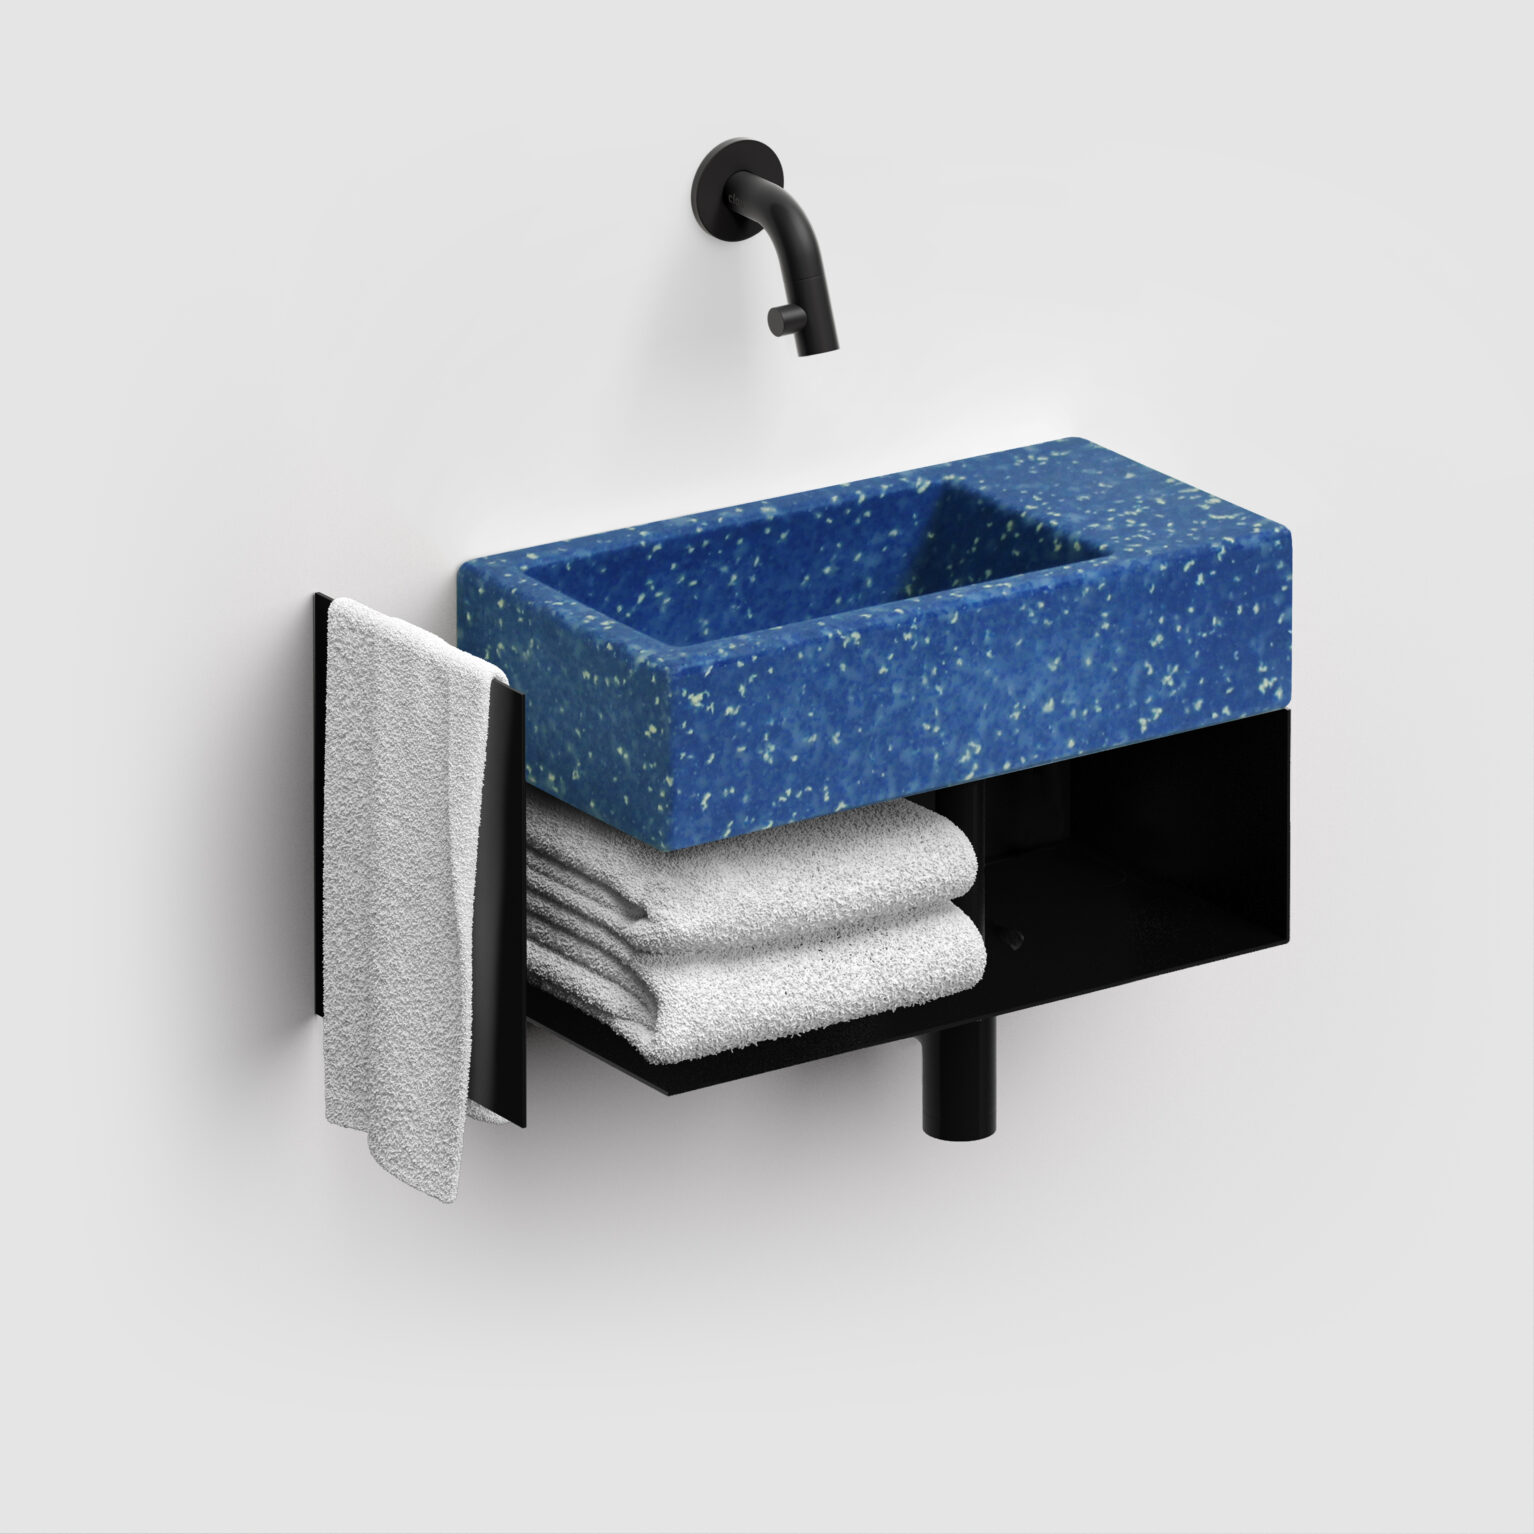 fontein-wastafel-terrazzo-blauw-toilet-badkamer-luxe-sanitair-Flush-3-rechts-clou-CL0382031-ecologisch-recycled-36cm-wandkraan-open-kast-mat-zwart-handdoek-houder-ecorazzo